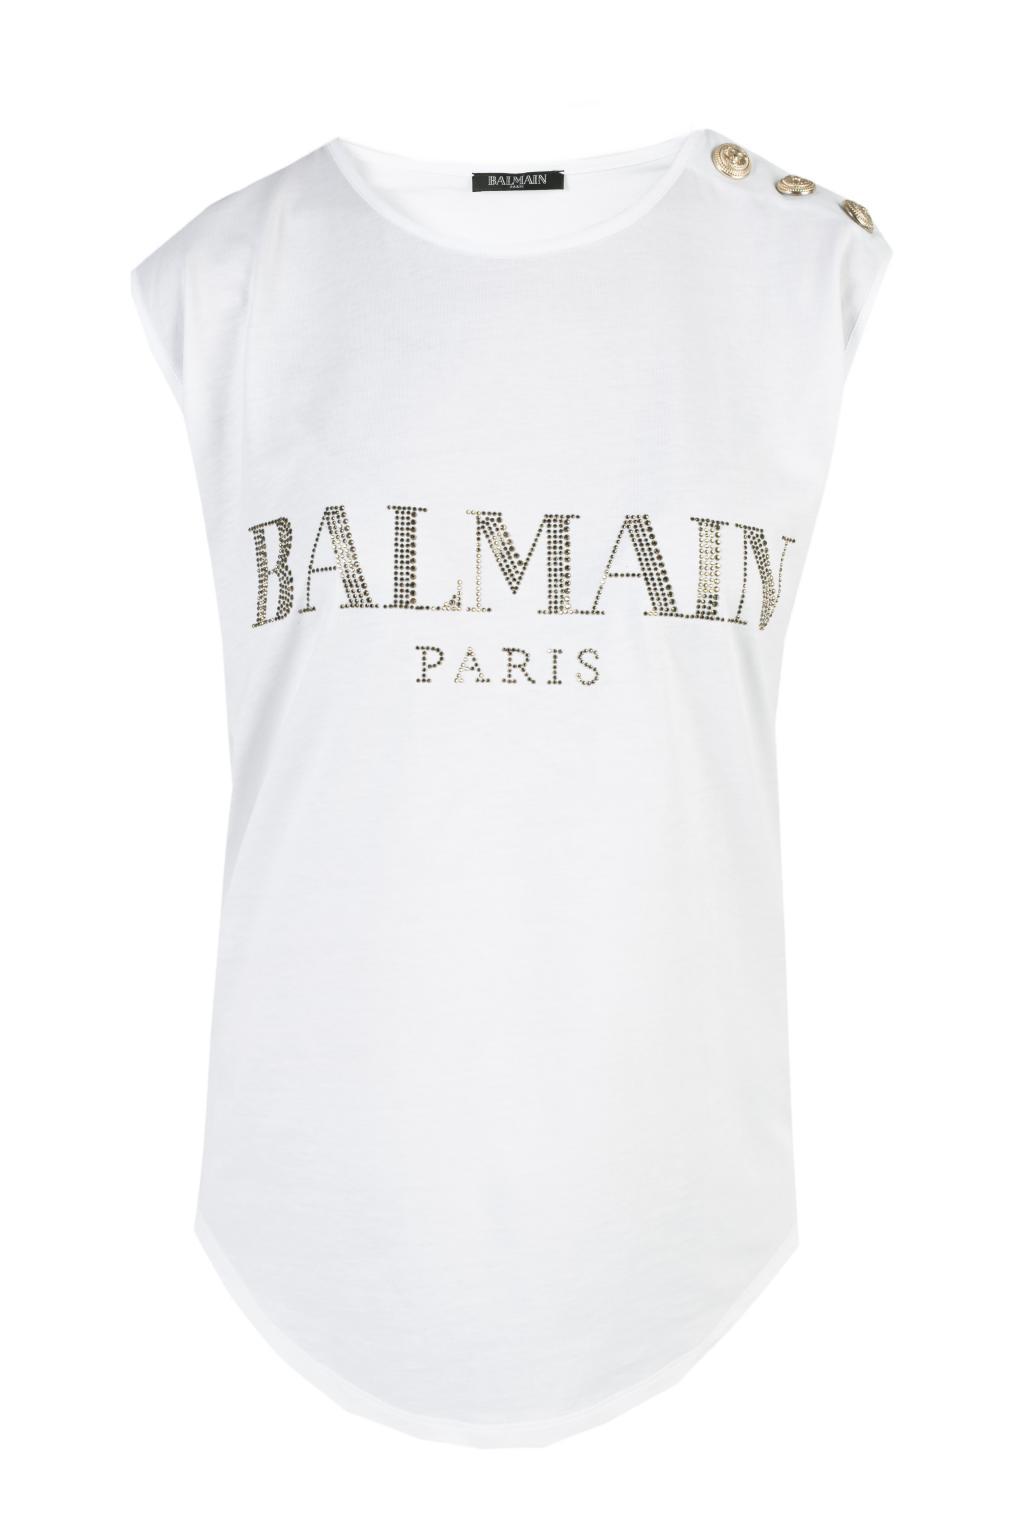 Balmain Logo Sleeveless Cotton Tee in White - Lyst